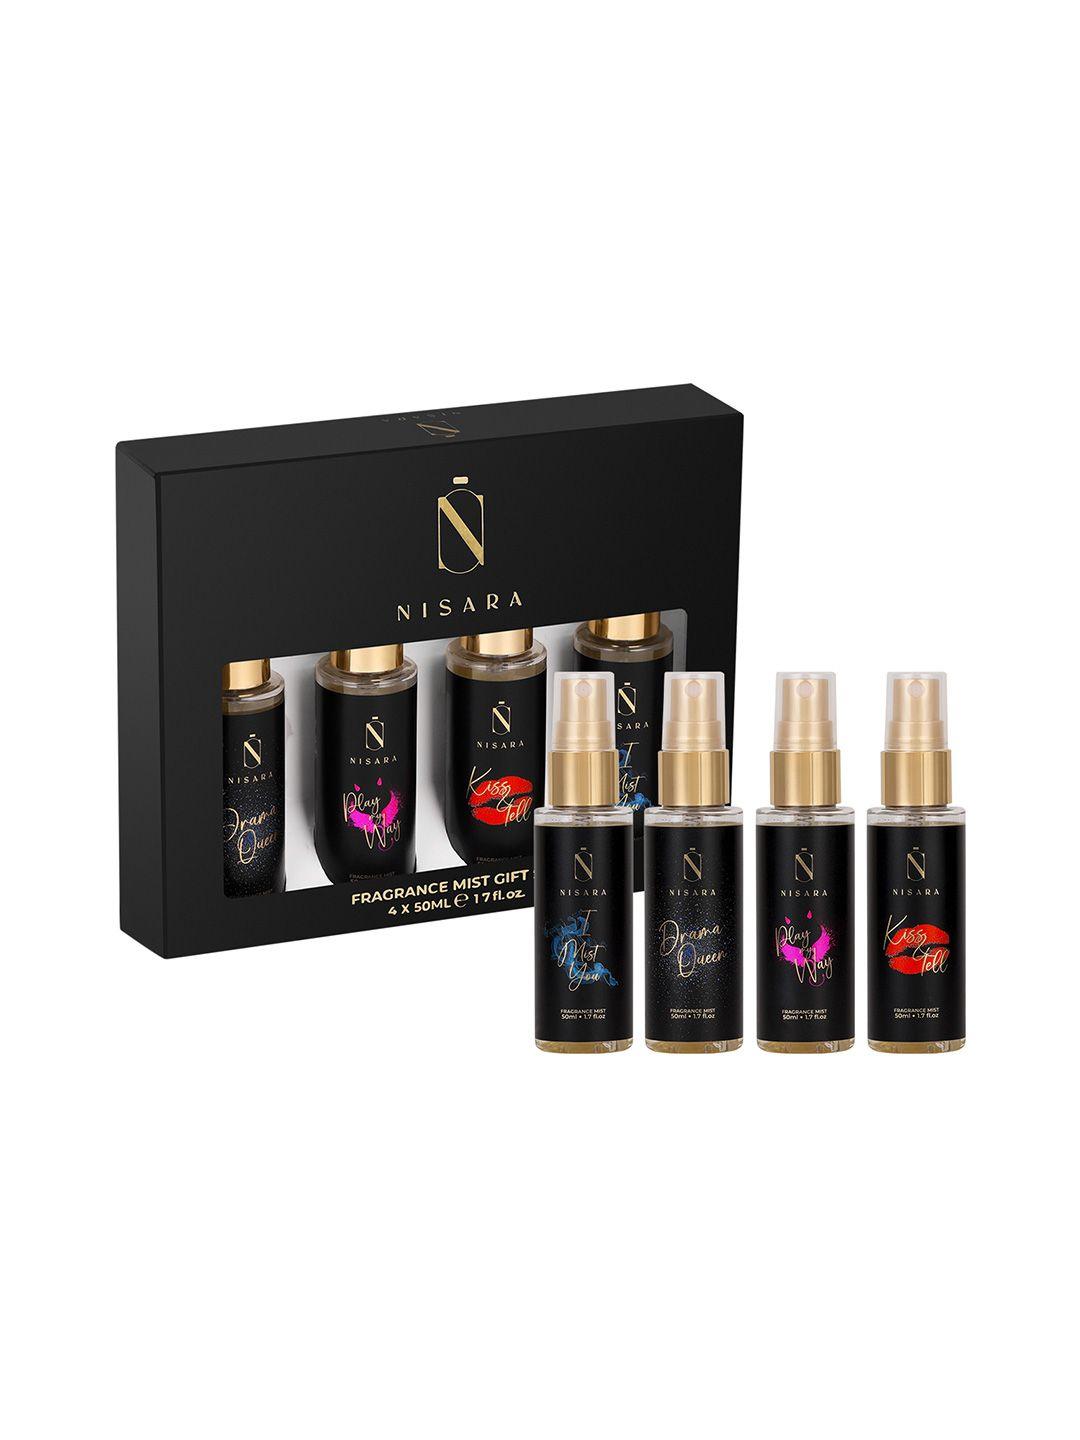 nisara women set of 4 fragrance mist gift set - 50ml each